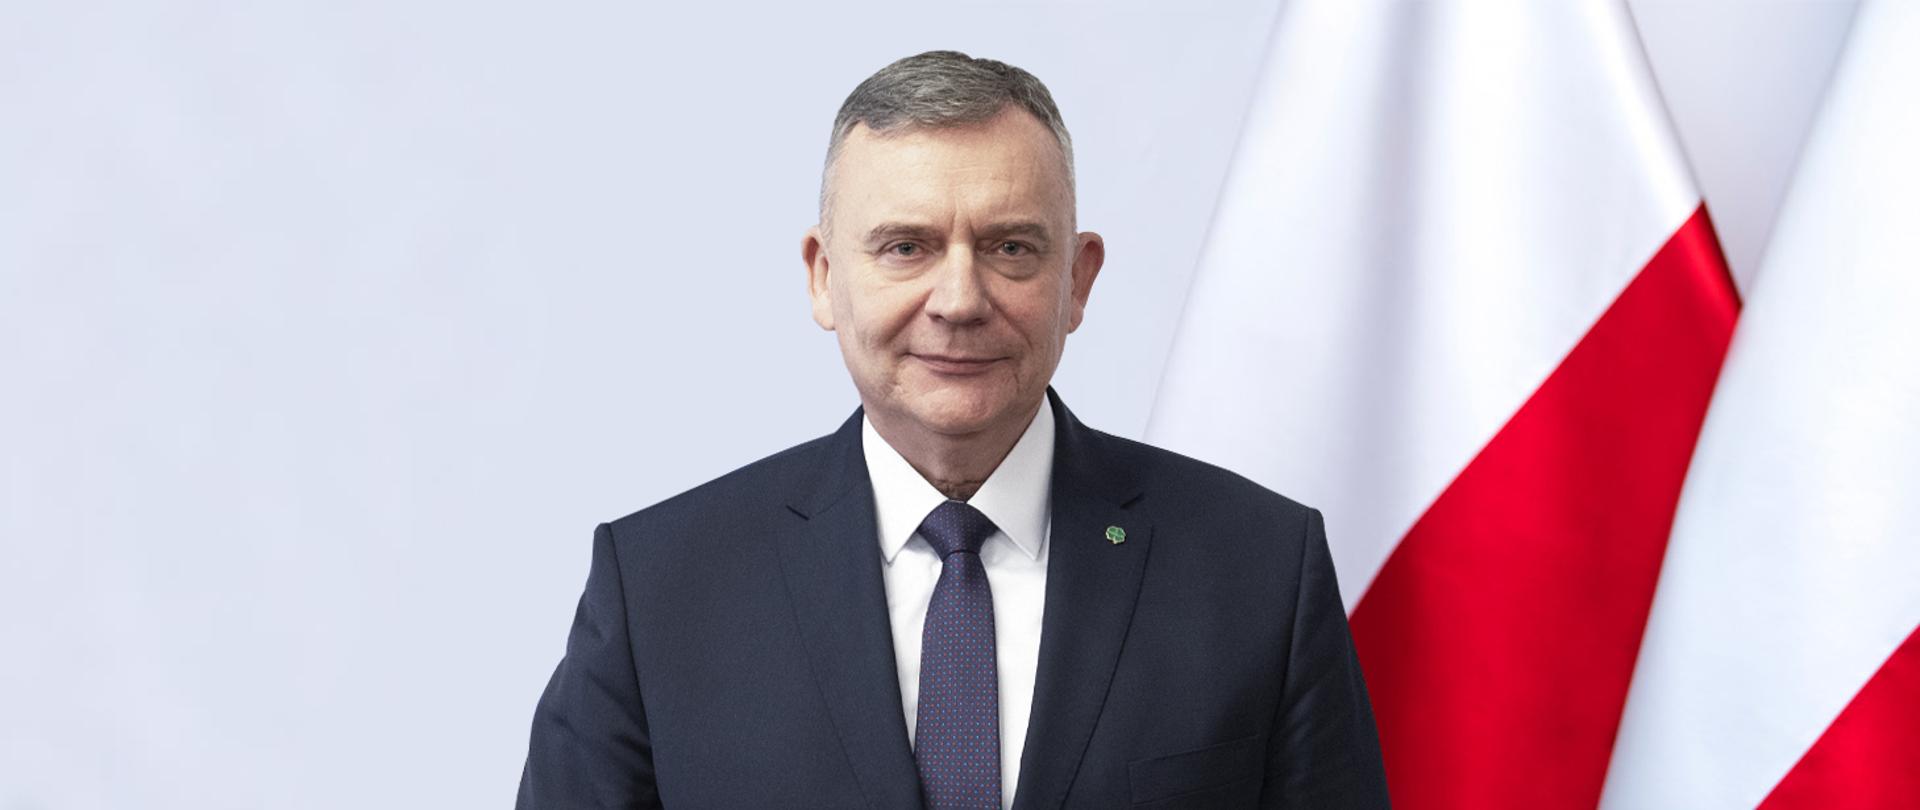 Paweł Bejda